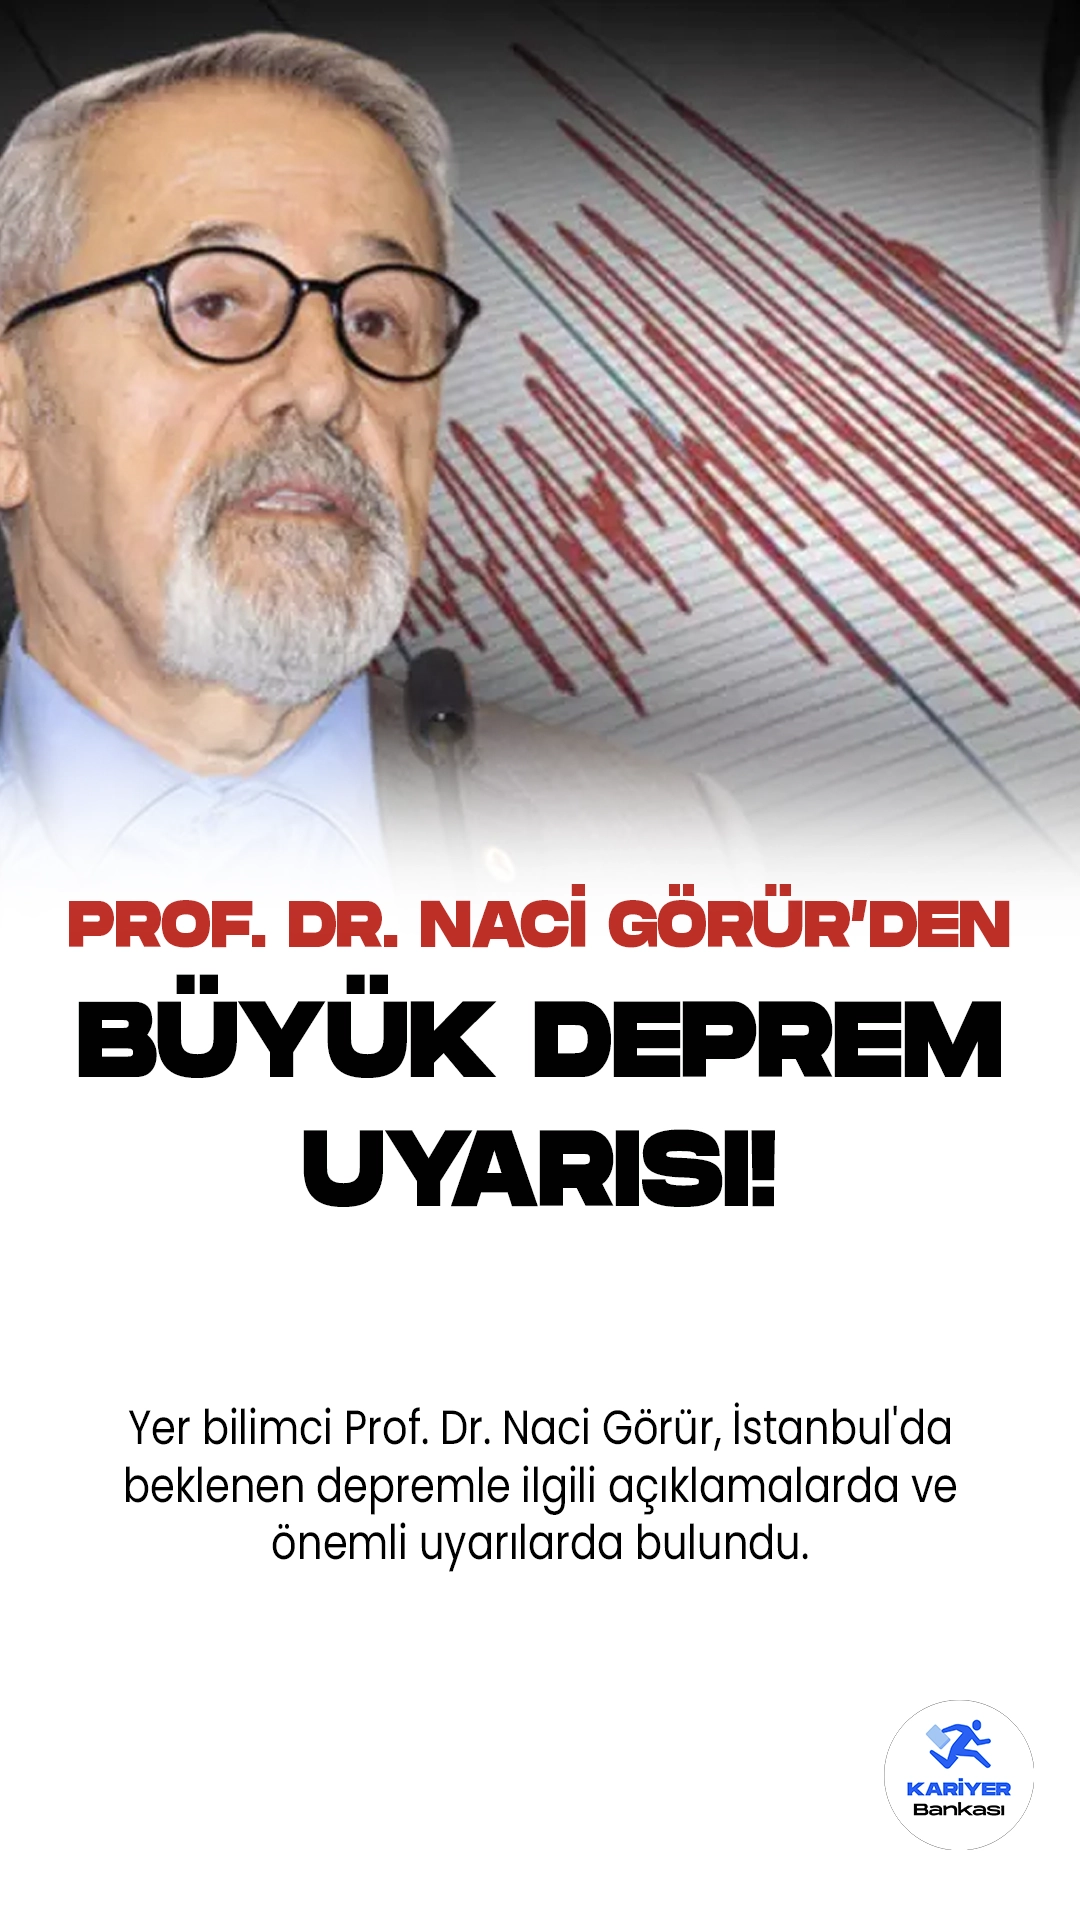 Prof. Dr. Naci Görür, İstanbul Depremi Beklentisi Hakkında Uyarıda Bulundu.Yer bilimci Prof. Dr. Naci Görür, İstanbul'da beklenen depremle ilgili açıklamalarda ve önemli uyarılarda bulundu. Adalar ve Kumburgaz fayının kırılmasını beklediklerini belirten Görür, Marmara Depremi'nin yaklaştığını vurguladı. Kuzey Anadolu fayının kuzey fayının kırılmasının beklendiğini ifade eden Görür, "Minimum 7.2 ile 7.6 büyüklüğünde bir deprem bekliyoruz." şeklinde konuştu.